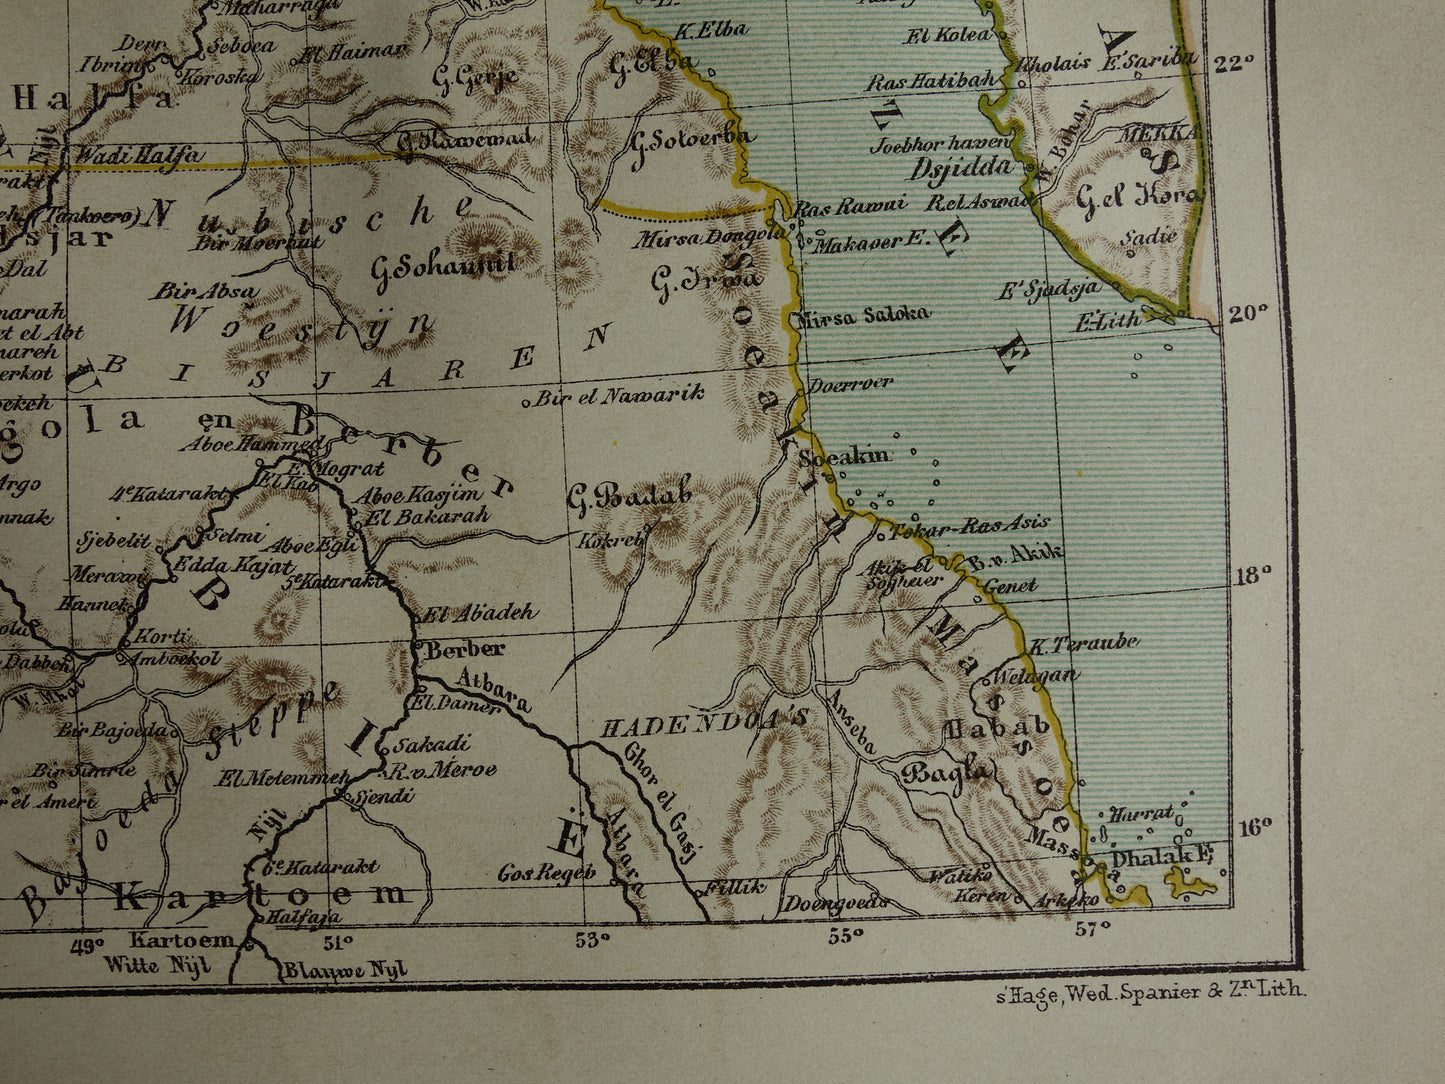 Egypte Soedan en Rode Zee oude landkaart originele antieke Kuyper kaart uit 1882 vintage